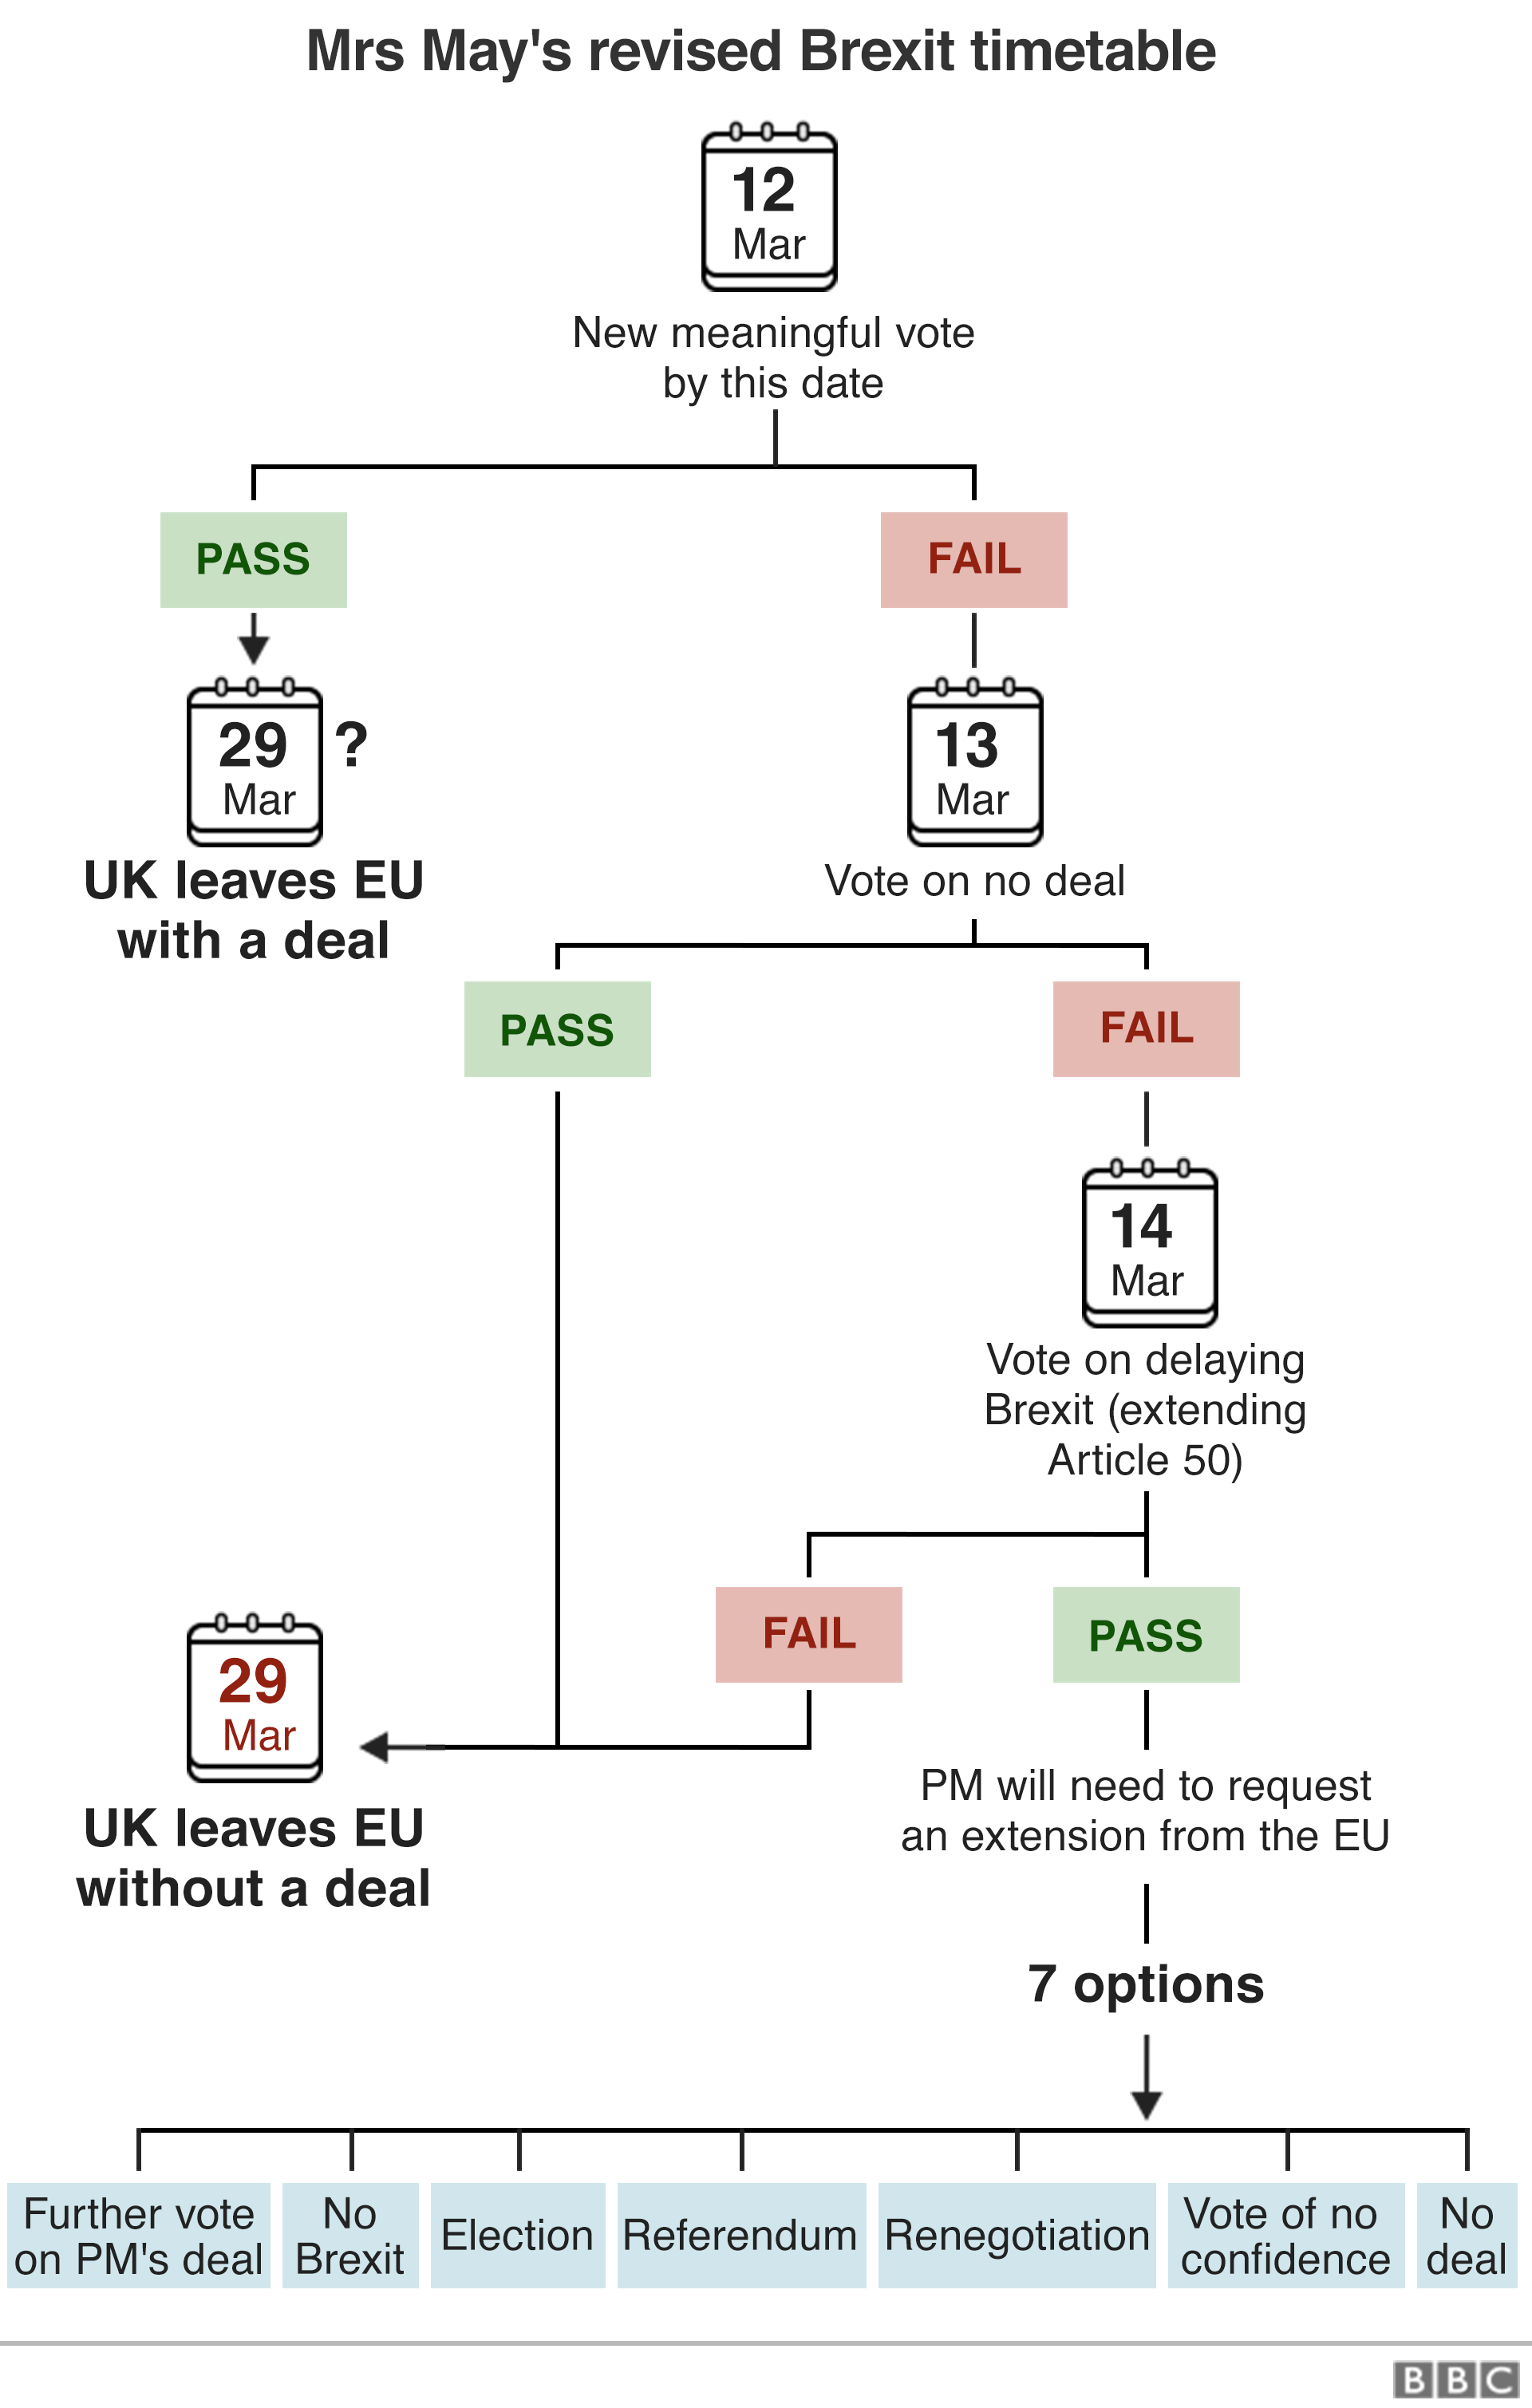 Блок-схема, показывающая пересмотренное расписание для Brexit, как было объявлено г-жой Мей 26 февраля